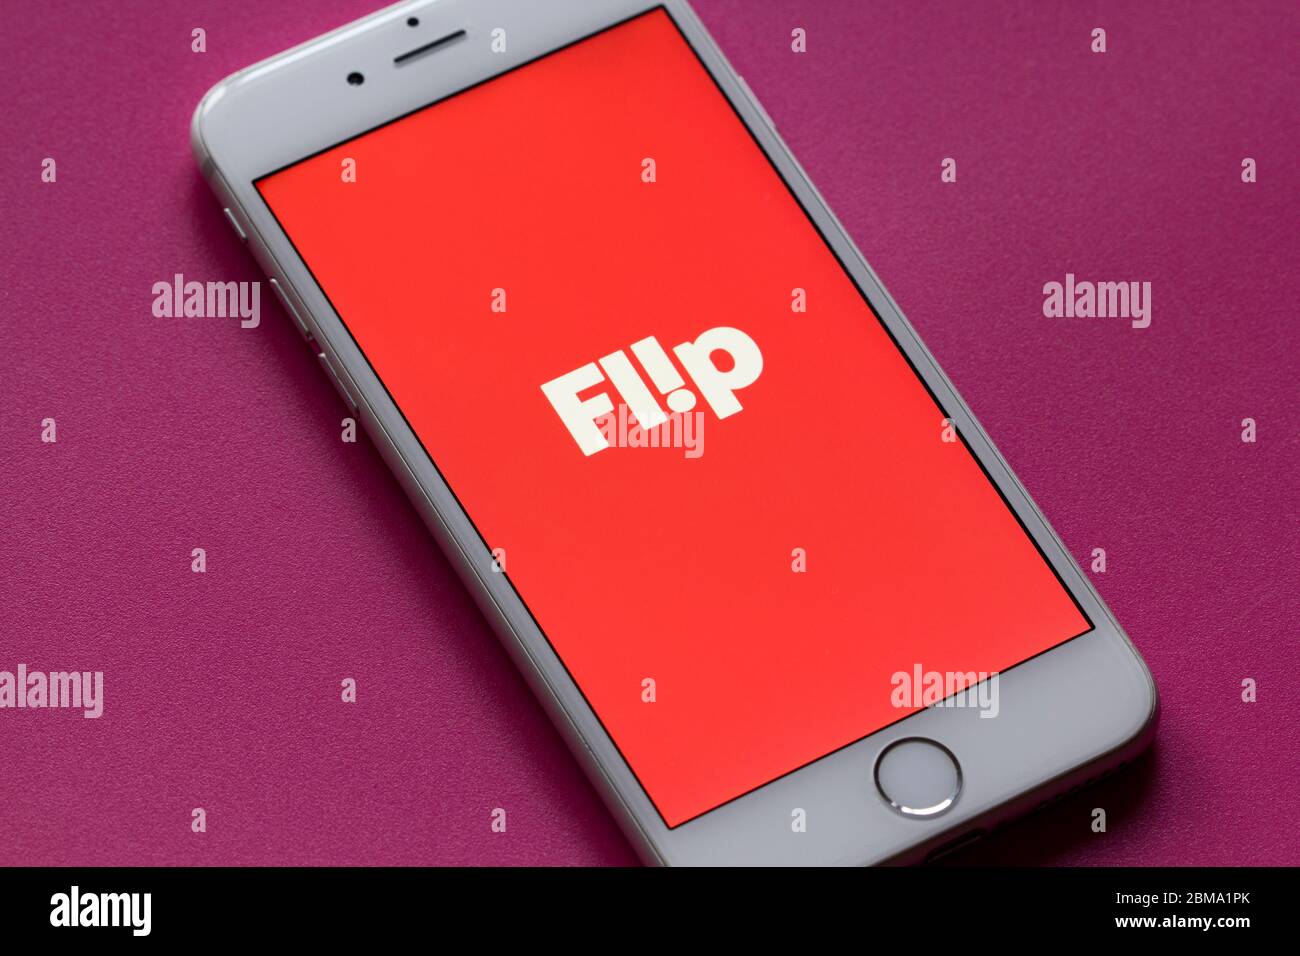 La página de bienvenida de la aplicación móvil Flip Fit se ve en un teléfono. La nueva aplicación de compras sociales tiene como objetivo combinar las redes sociales y la moda en la experiencia de compra en línea. Foto de stock